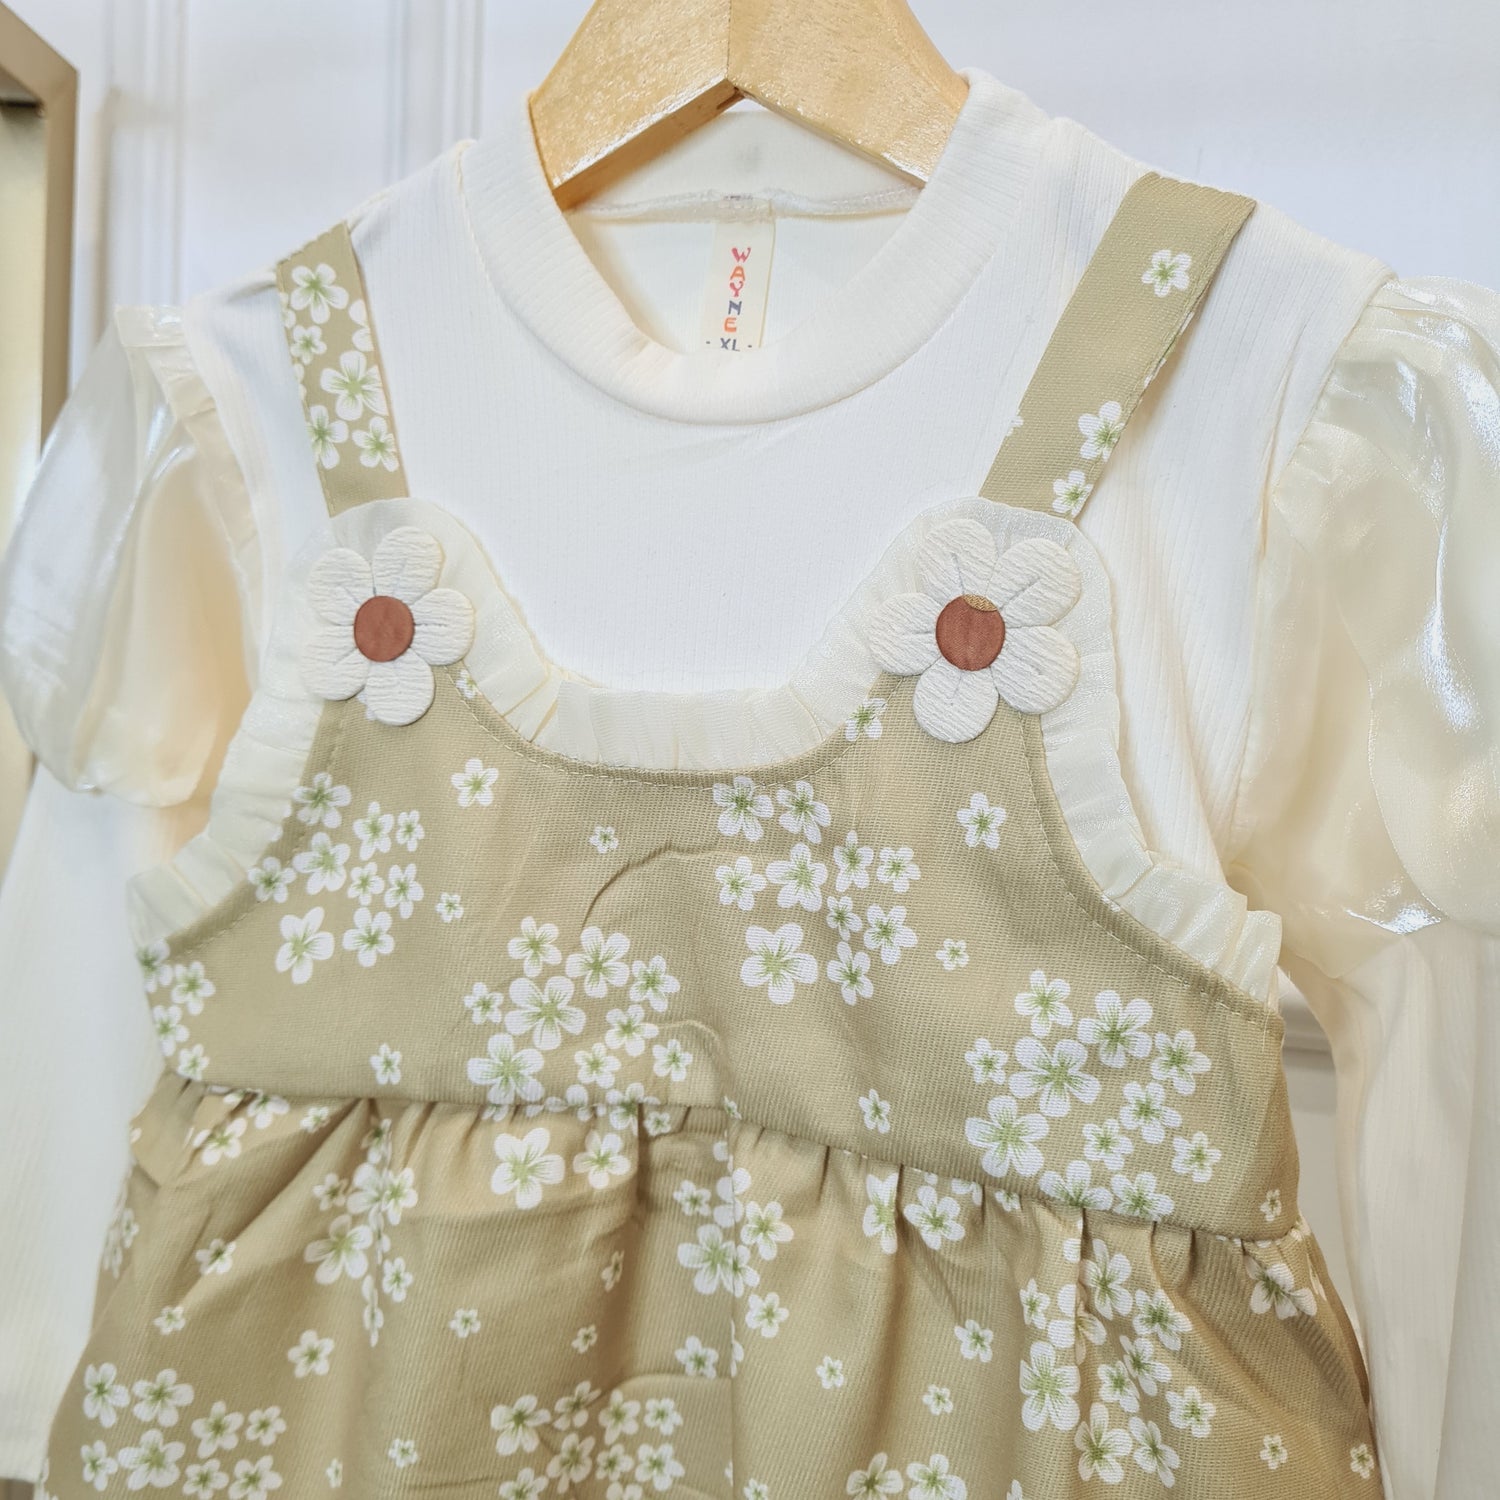 [340423-V1] - Baju Dress Lengan Panjang Bunga Fashion Anak Perempuan Import - Motif Soothing Flower